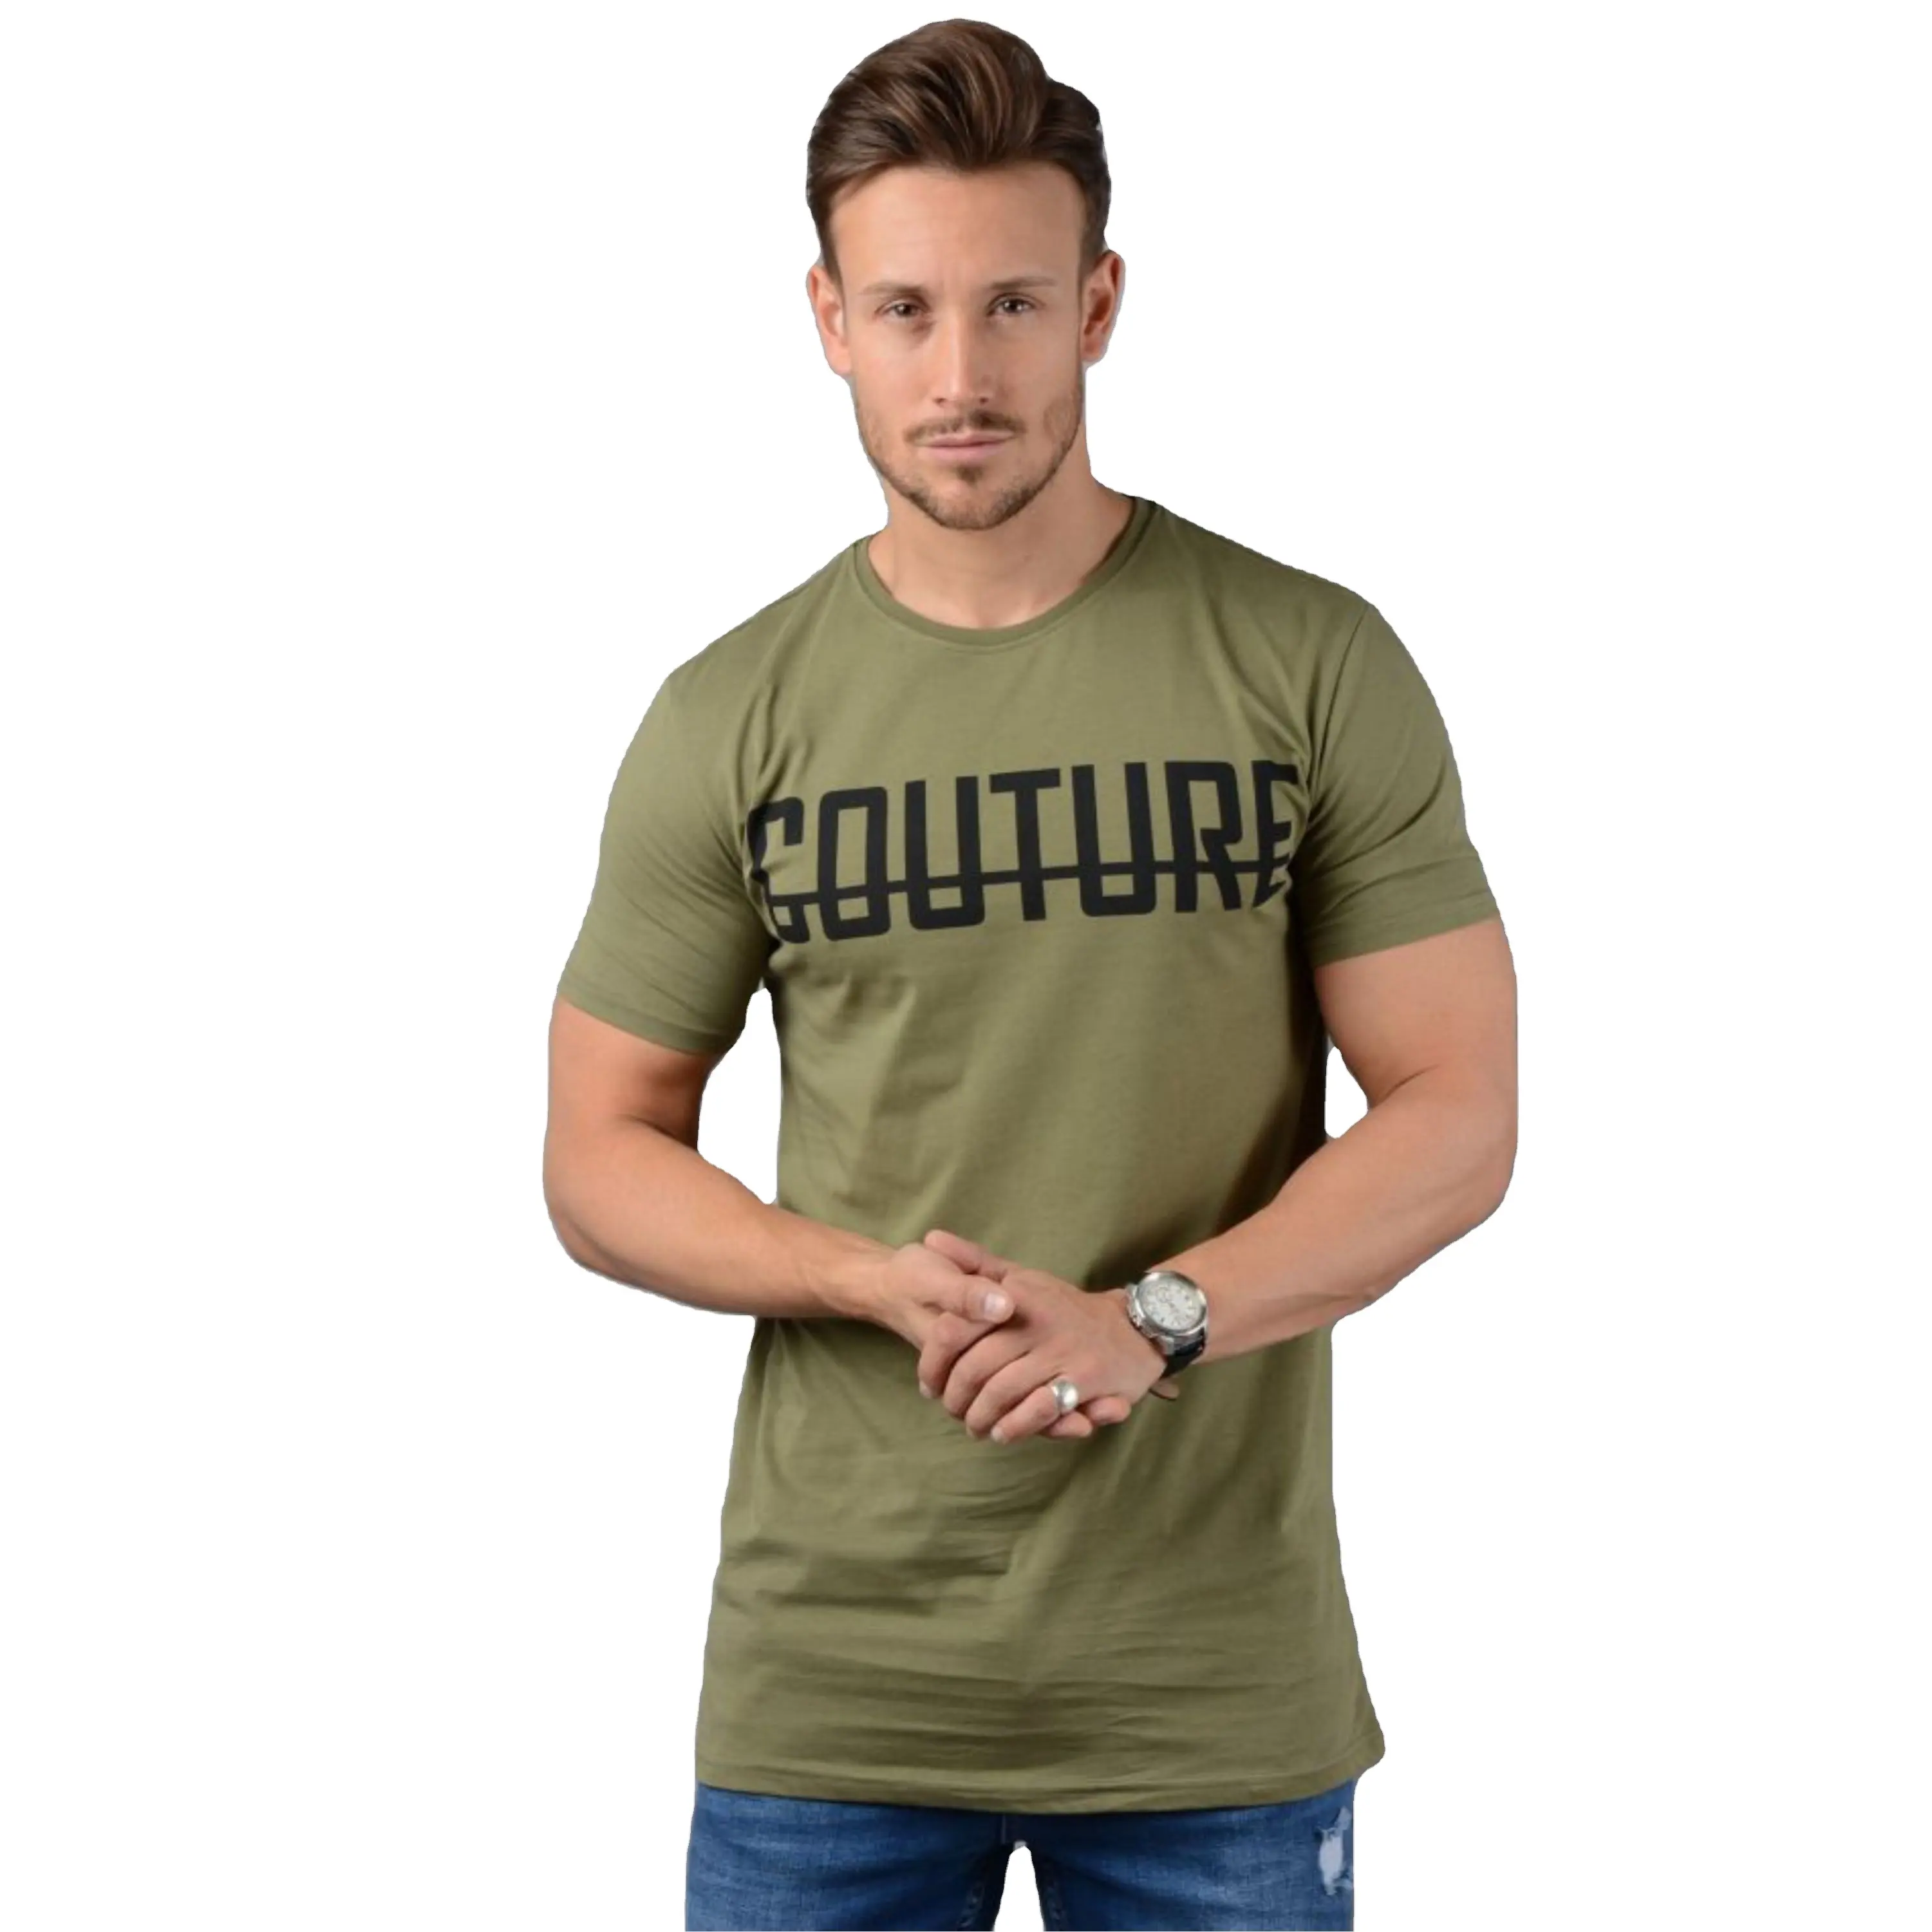 Camiseta lisa transpirable para hombre, camiseta de color caqui y verde, fabricante a precio de fábrica, venta al por mayor